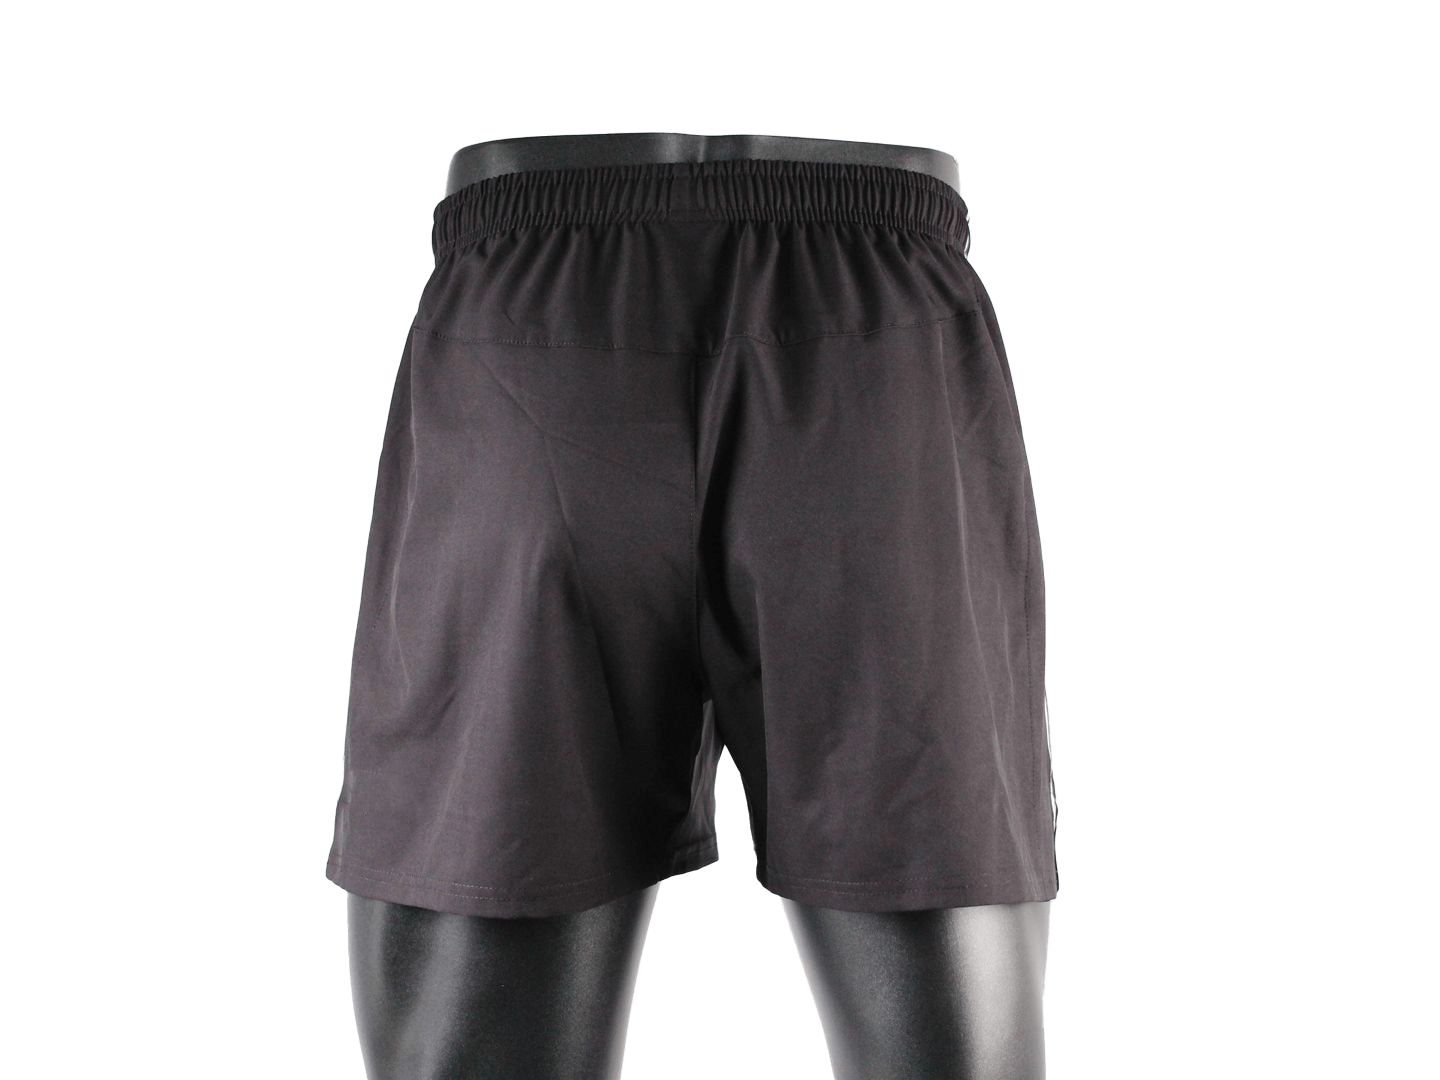 shorts for soccer